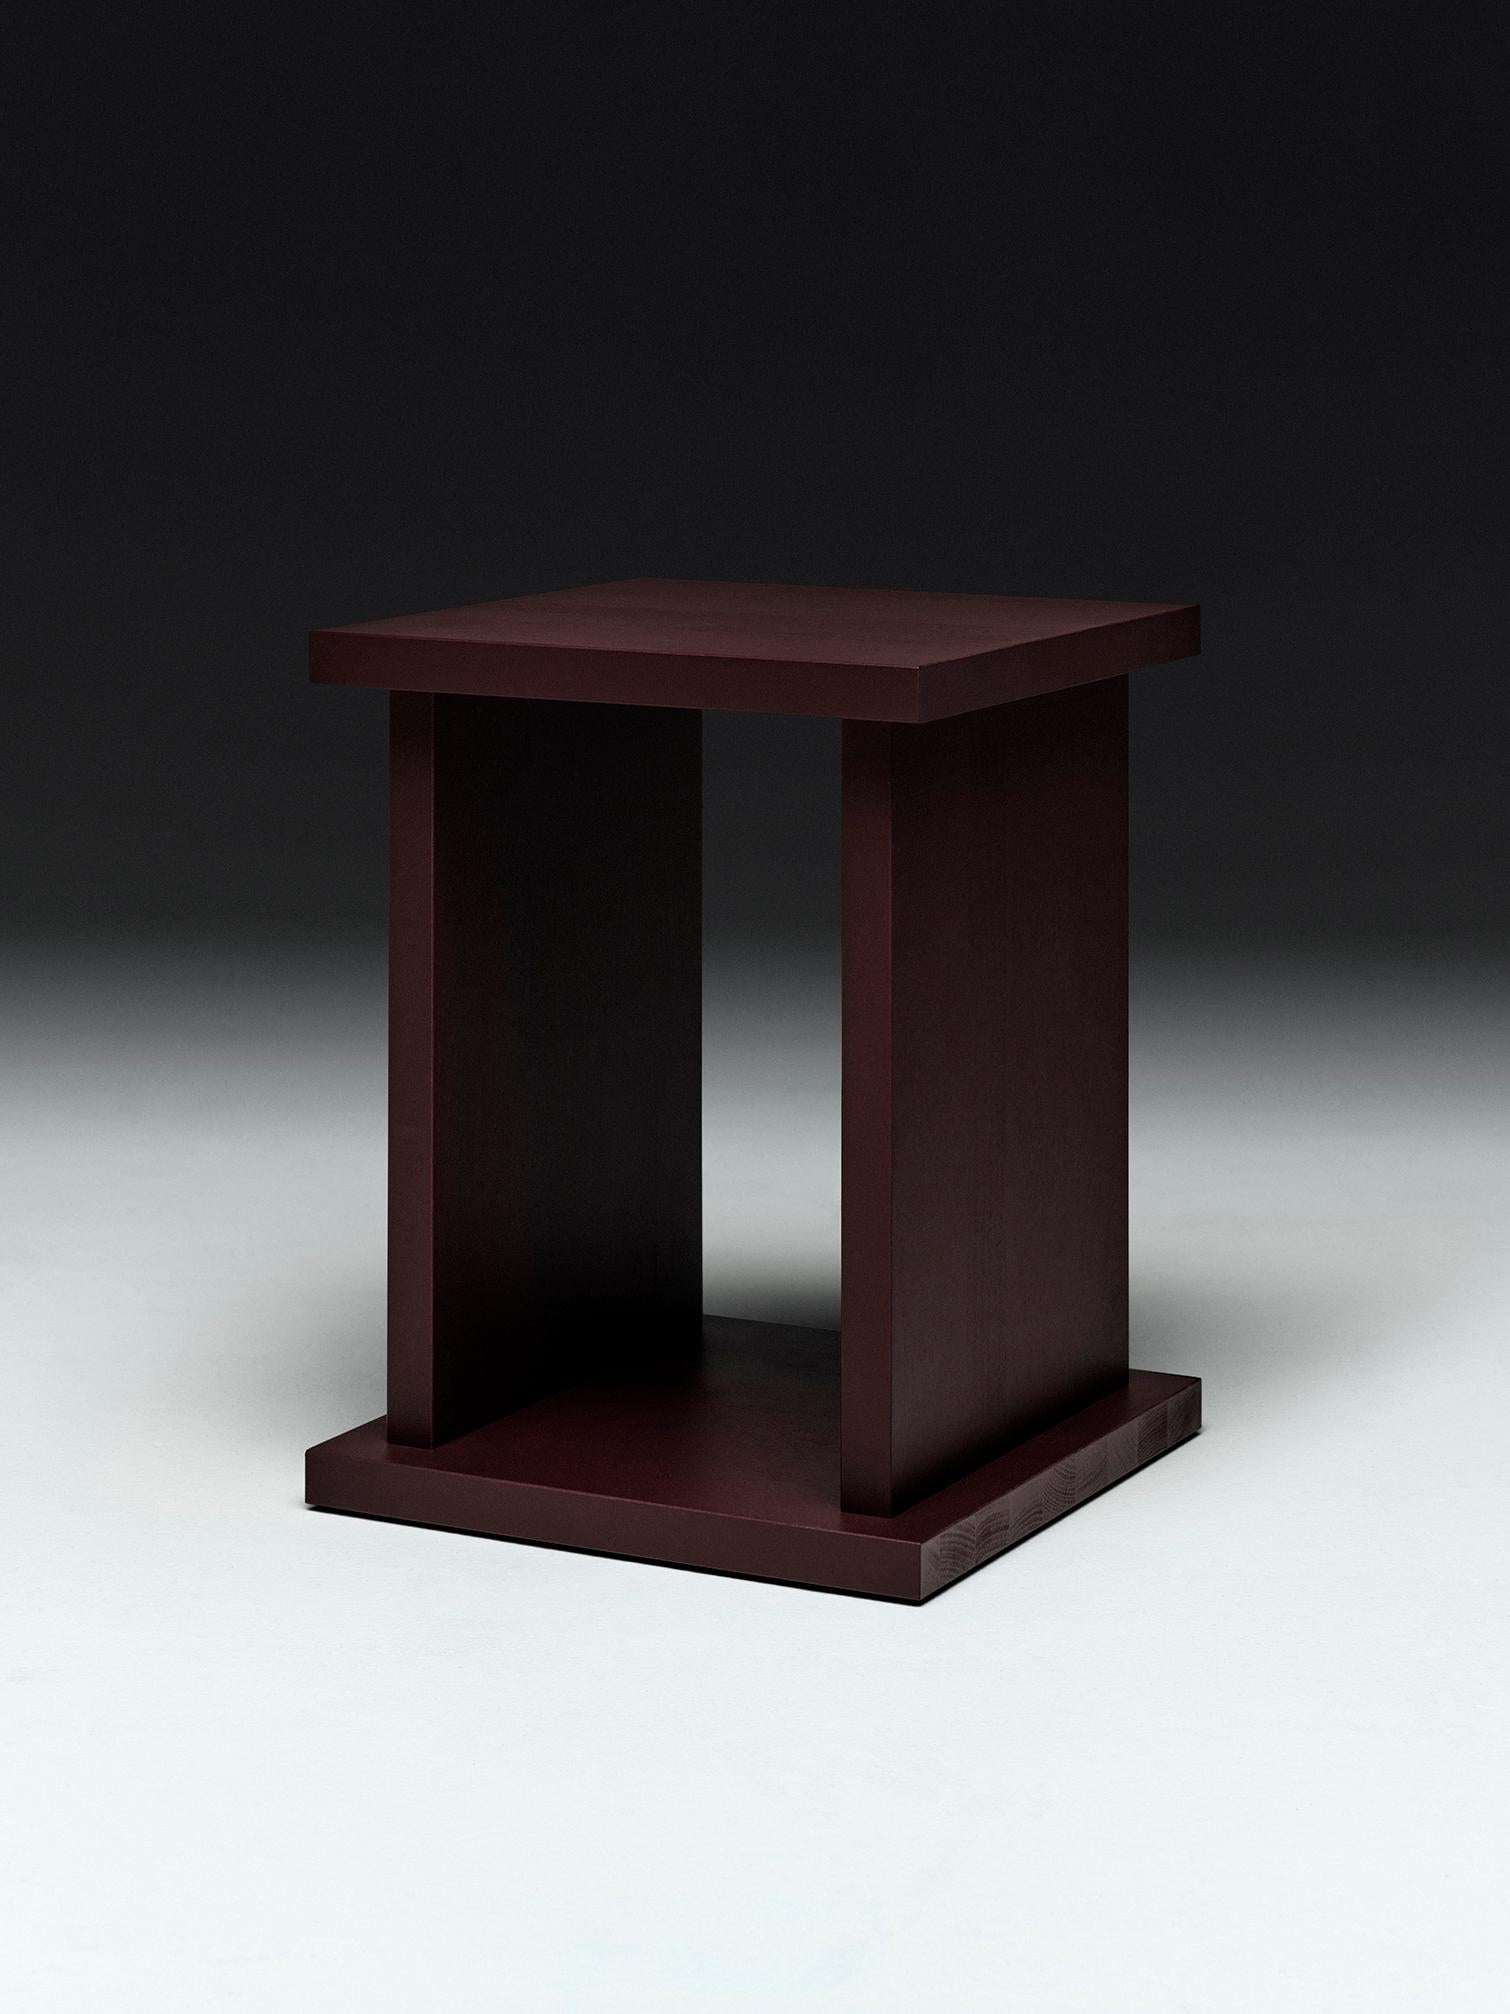 
Voici la table de chevet de Wannberg, une création innovante fabriquée à partir de bois excédentaire obtenu lors de la production du lit flottant, garantissant ainsi une utilisation optimale des ressources. Son design minimaliste s'intègre